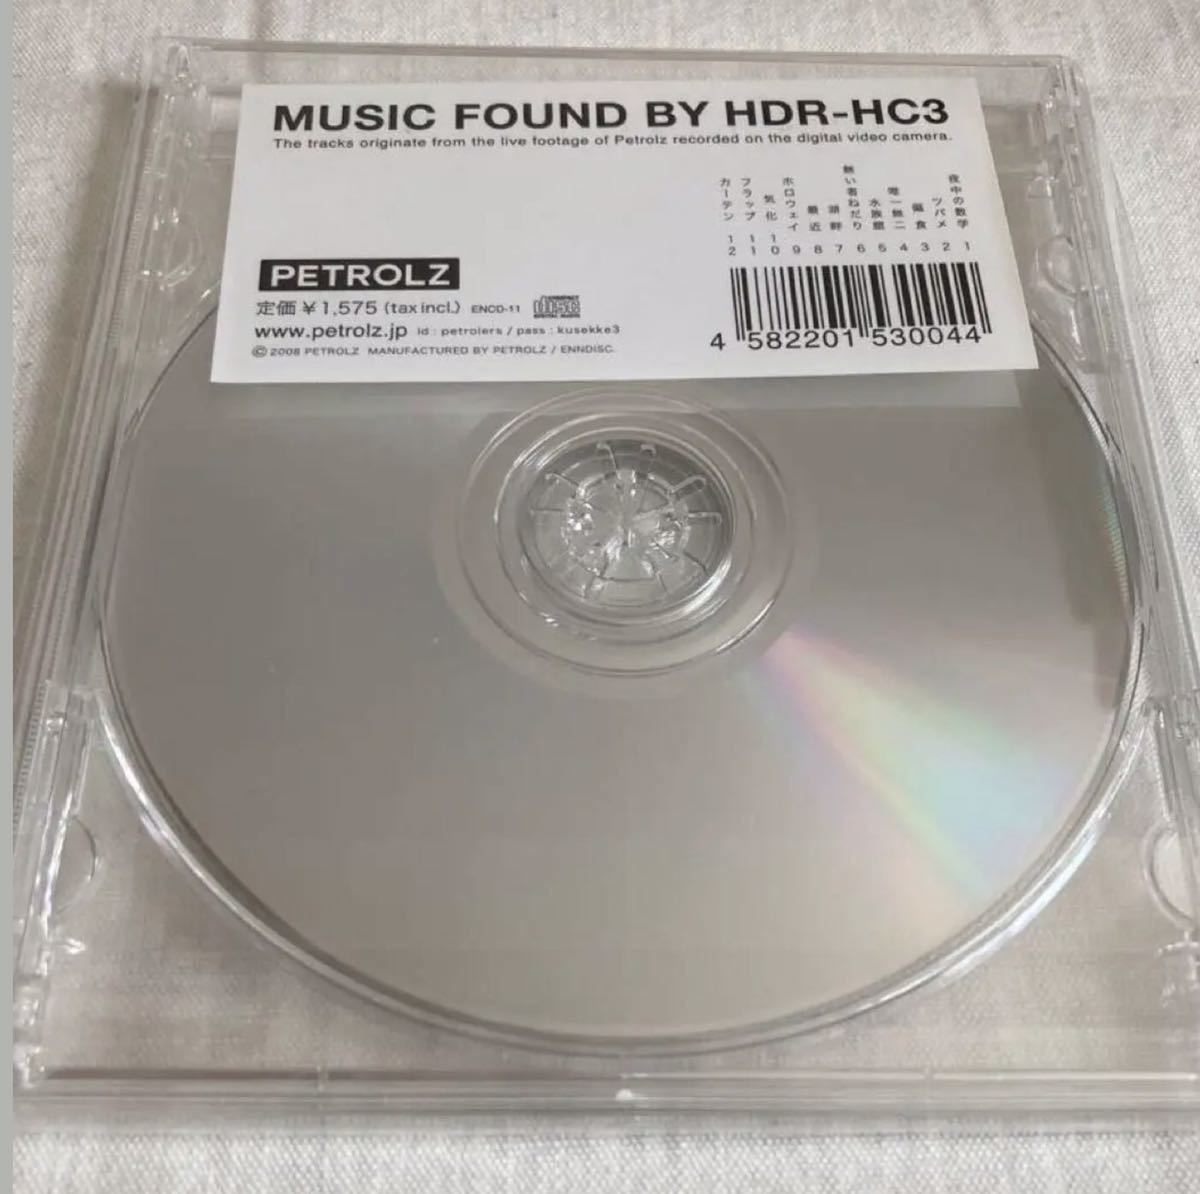 超激レア盤 ペトロールズ MUSIC FOUND BY HDR-HC3 petrolz ライブ盤